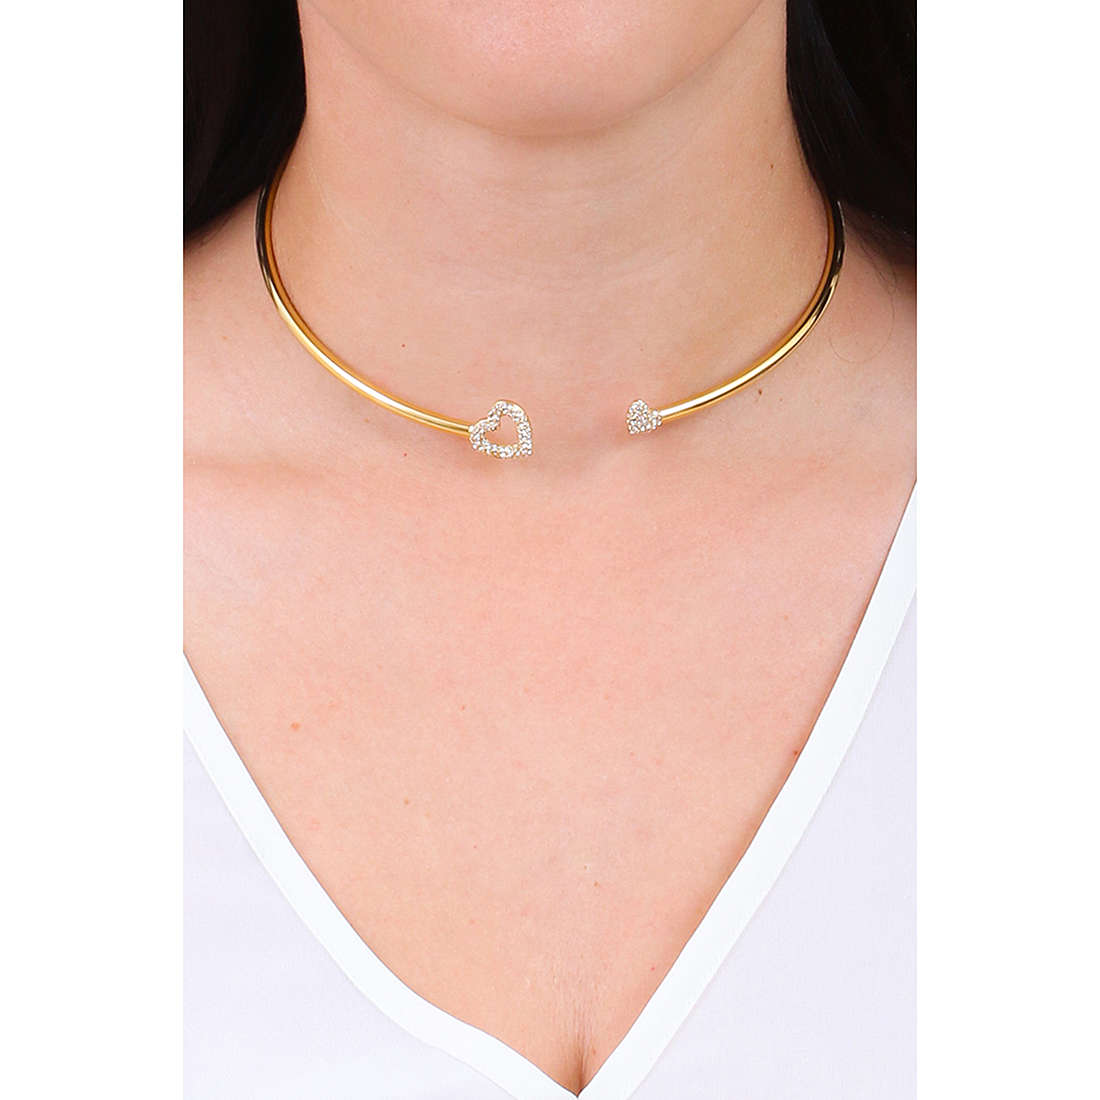 Morellato necklaces Incontri woman SAUQ01 wearing